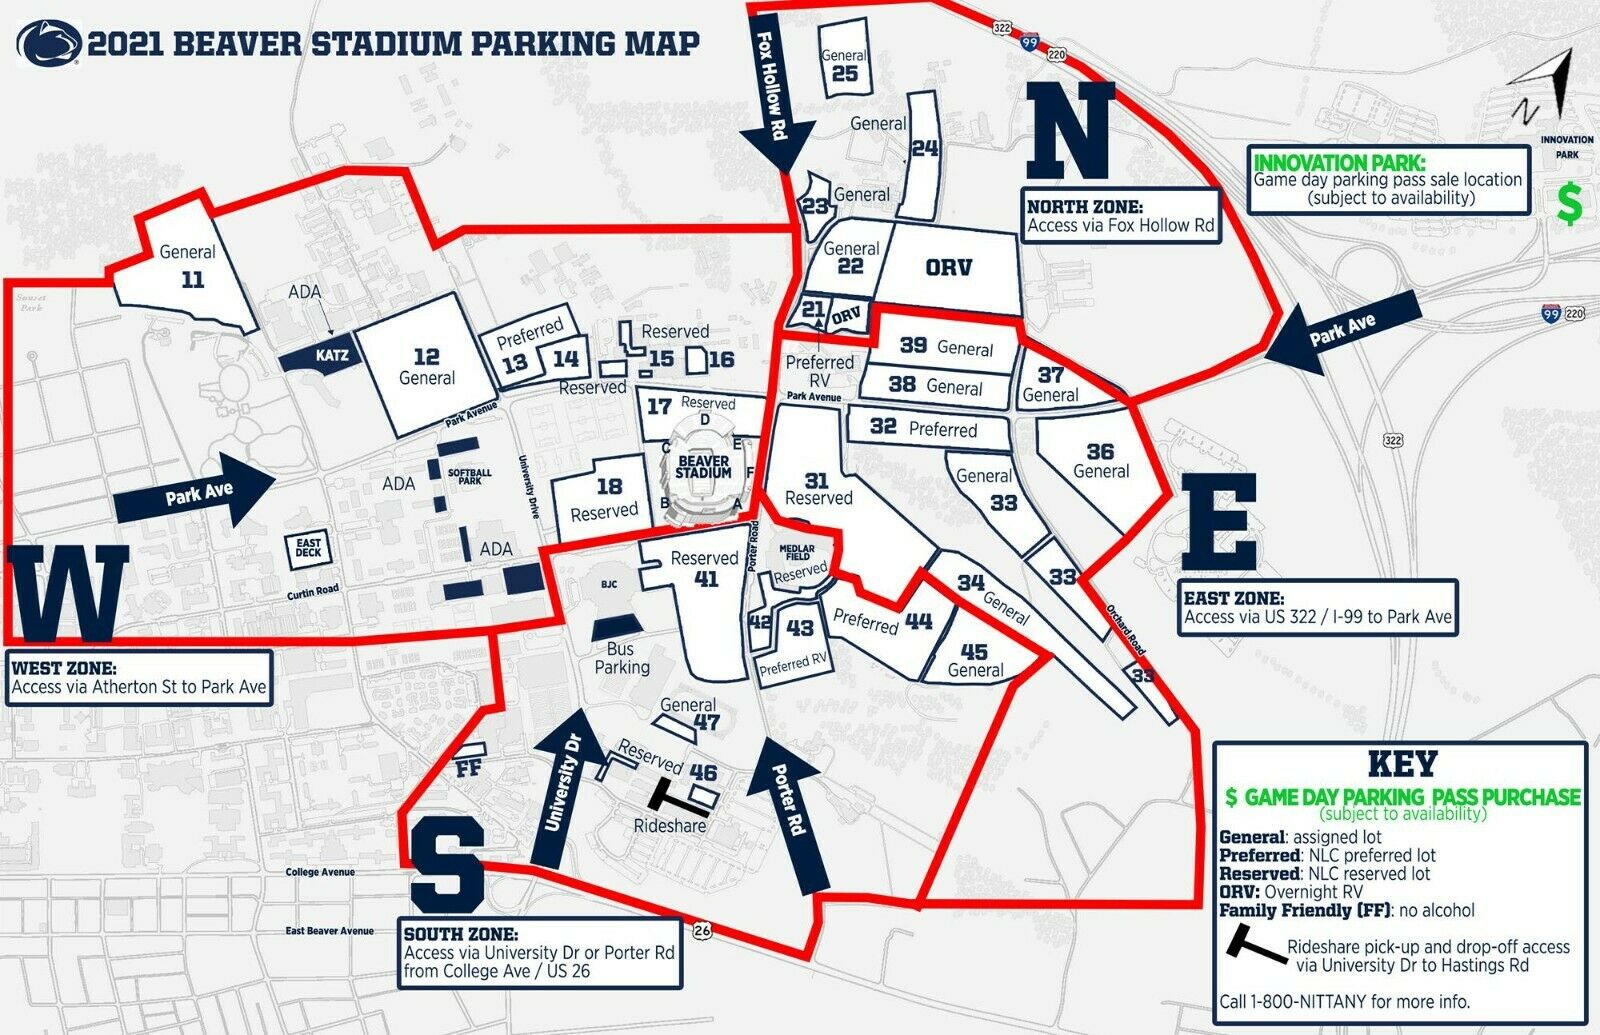 Penn State Vs Villanova (september 25, 2021) General Parking Pass - Lot 12